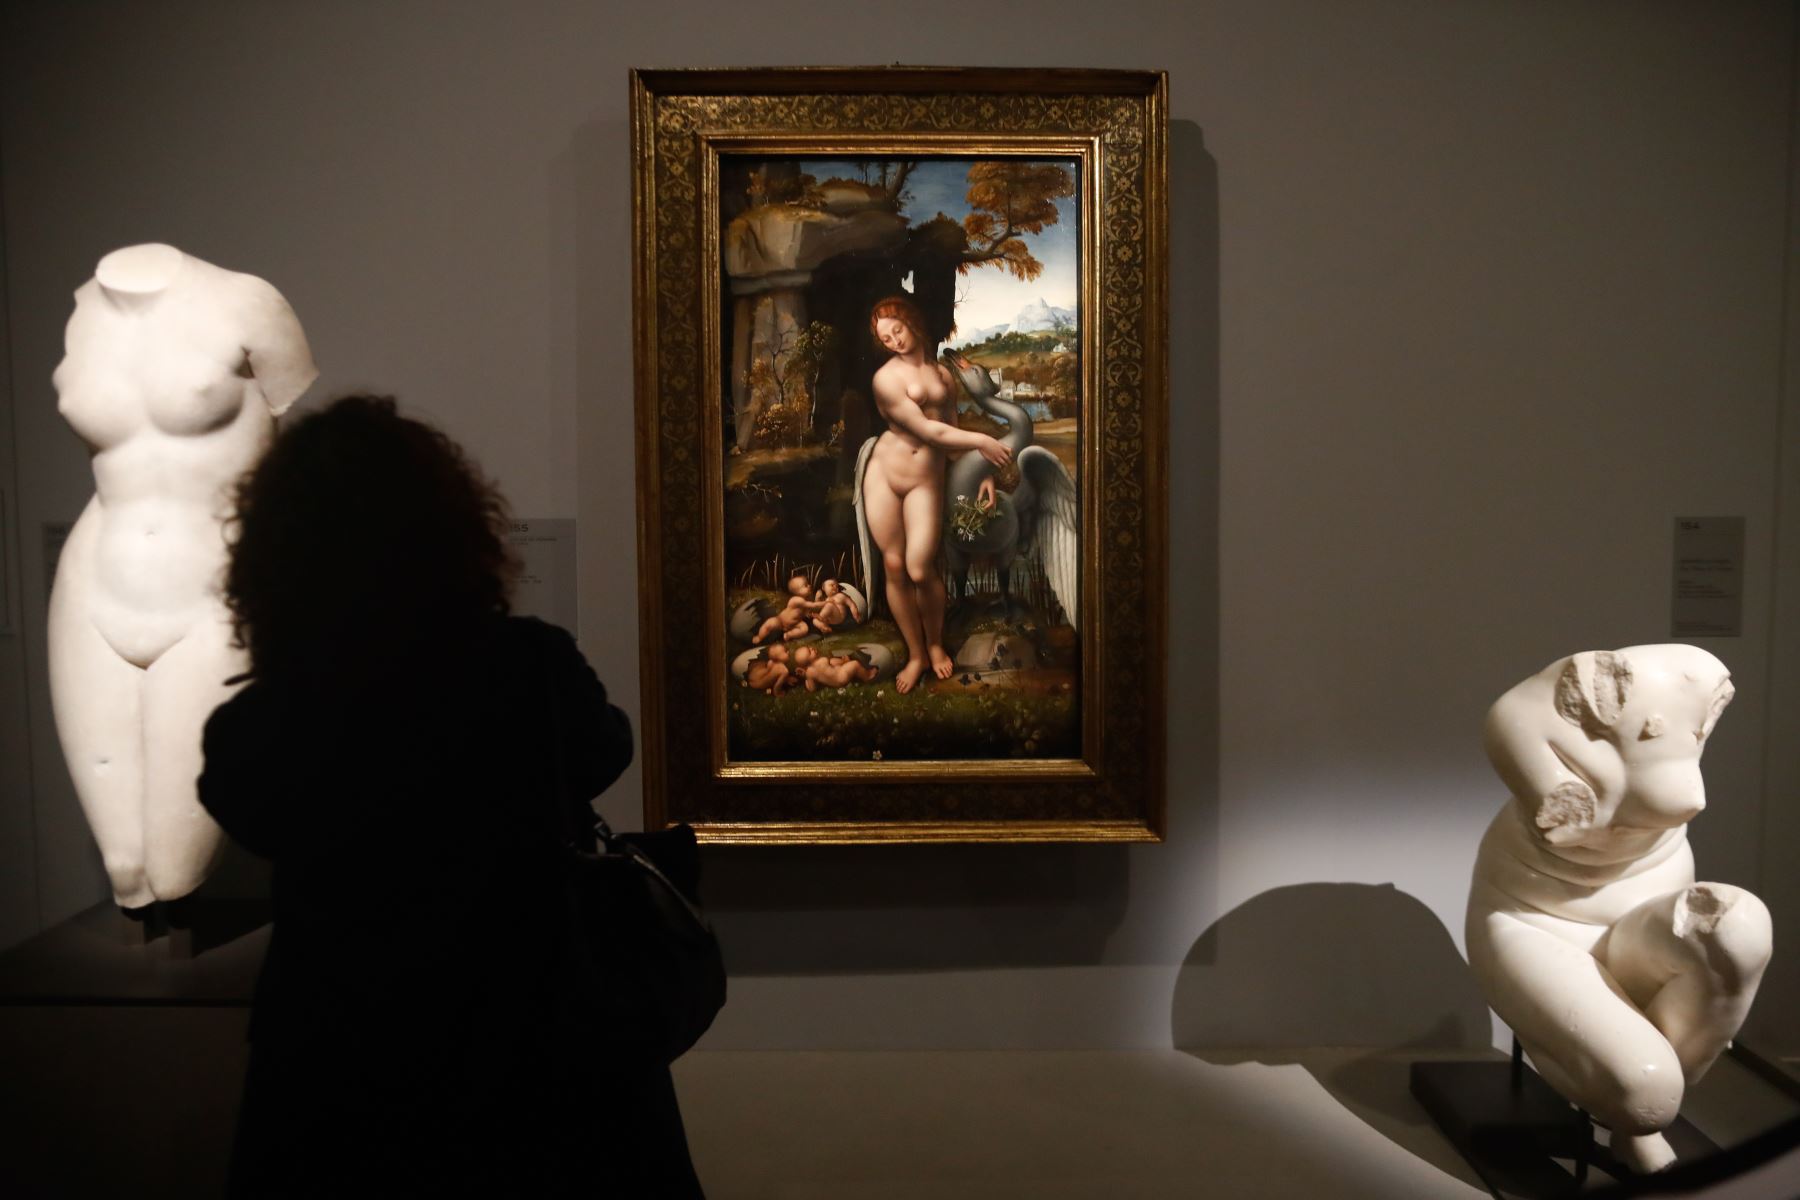 Una persona mira una pintura de "Leda y el cisne" de Leonardo da Vinci durante la inauguración de la exposición en el museo del Louvre en París.  Foto: AFP